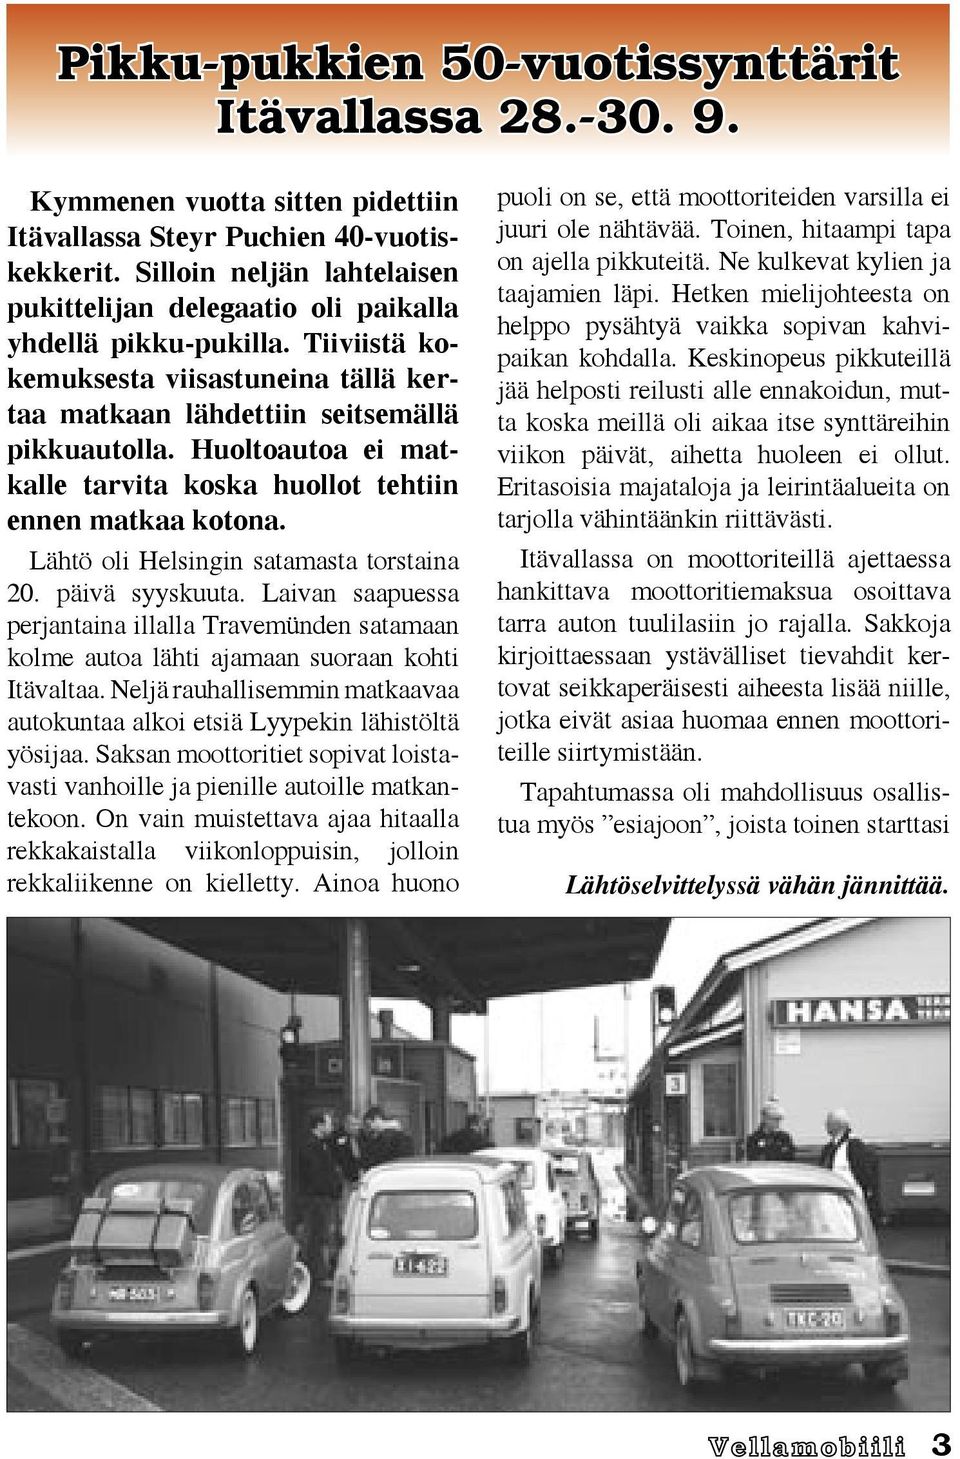 Huoltoautoa ei matkalle tarvita koska huollot tehtiin ennen matkaa kotona. Lähtö oli Helsingin satamasta torstaina 20. päivä syyskuuta.